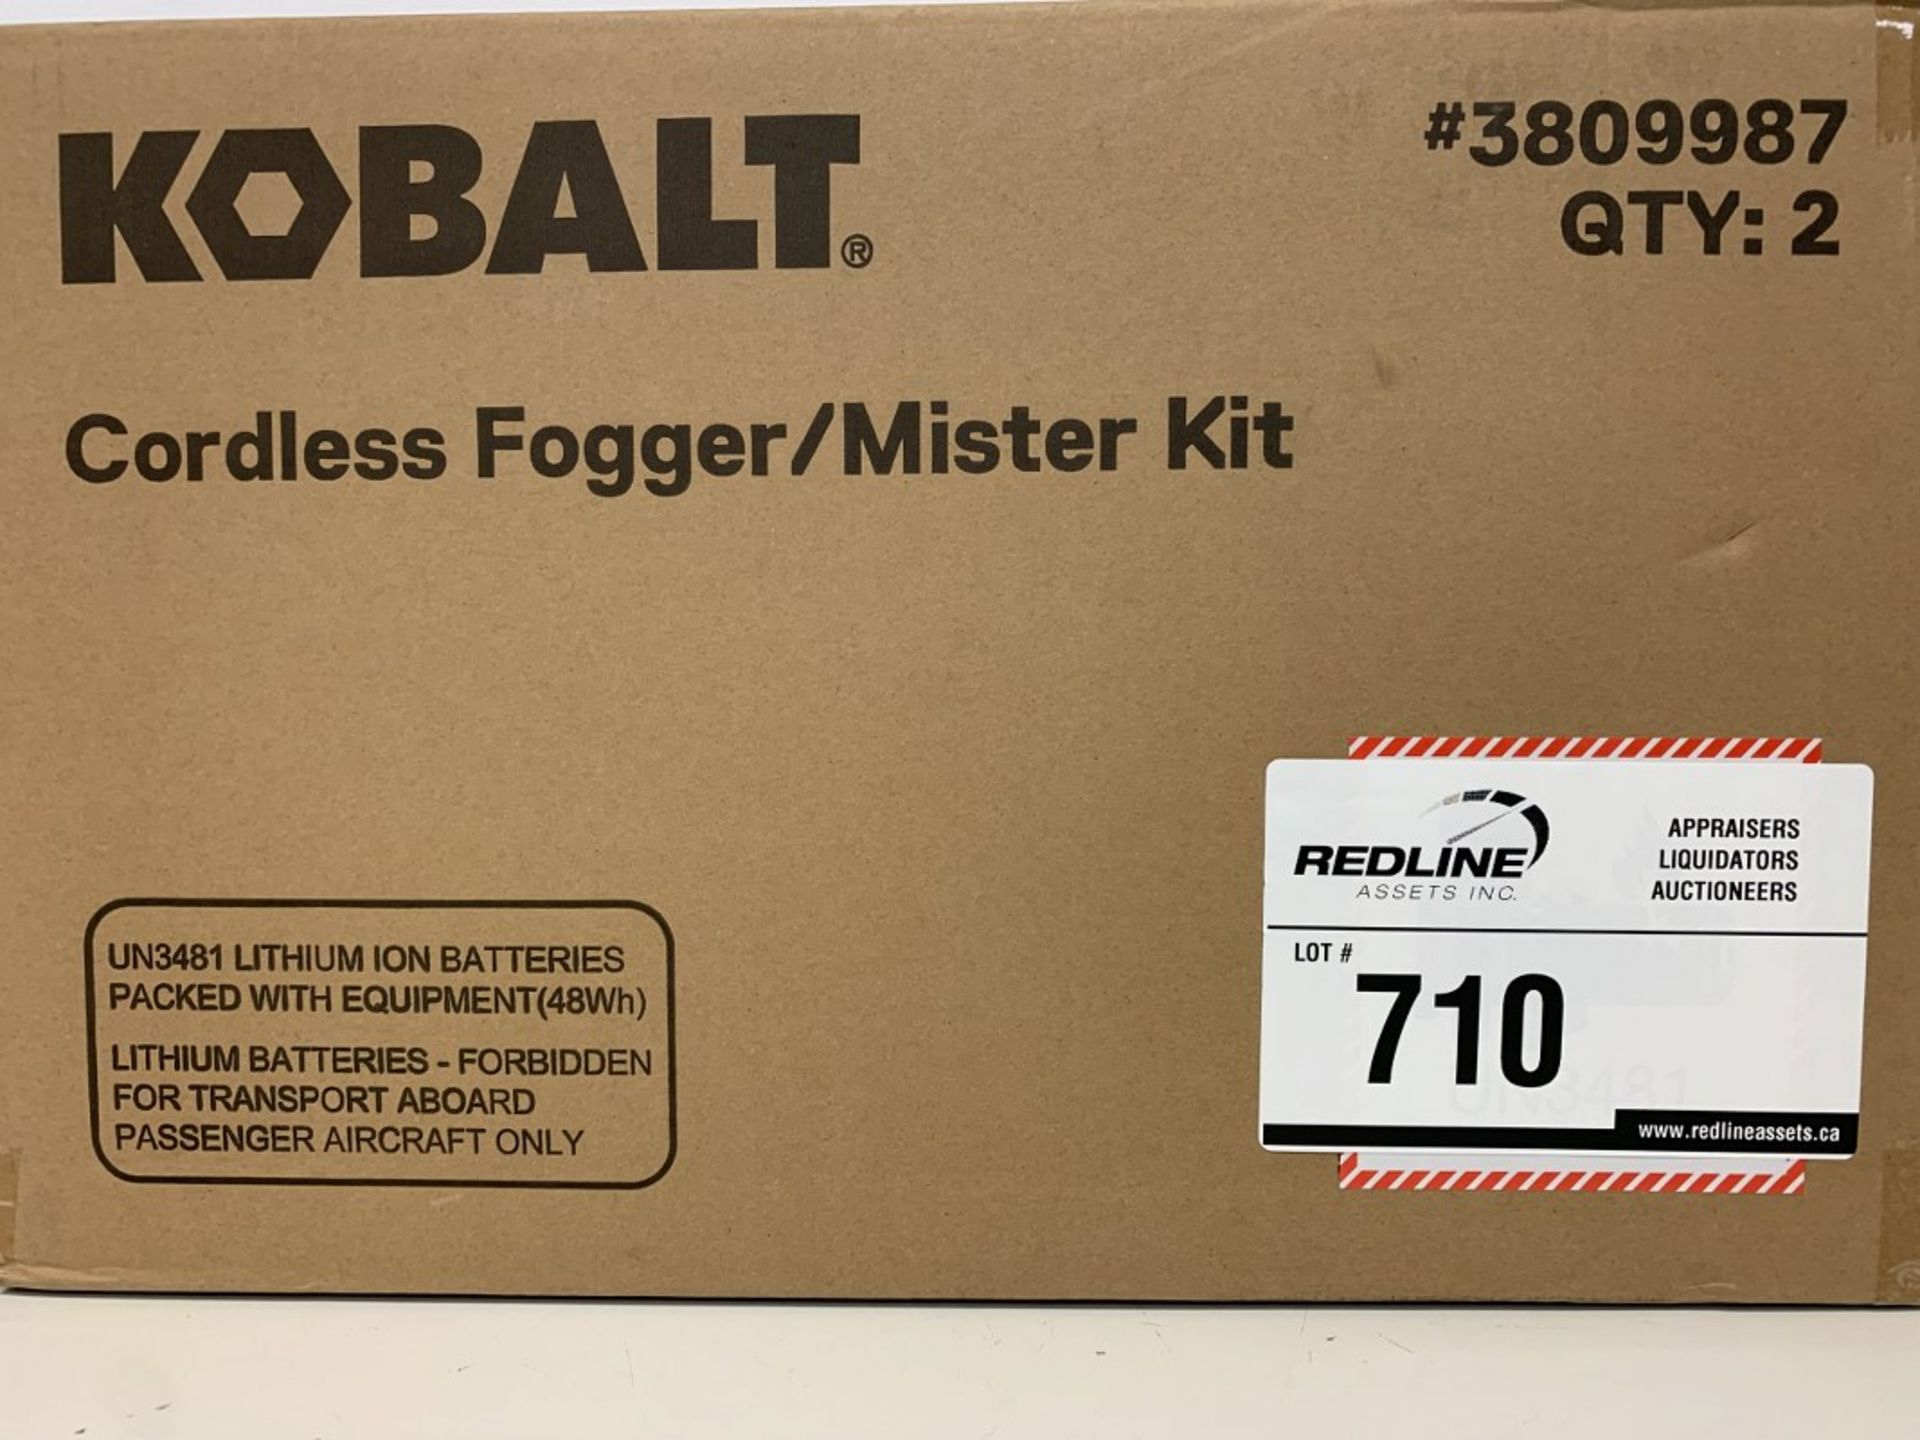 Kobalt - Cordless Fogger/Mister Kit - Image 2 of 3